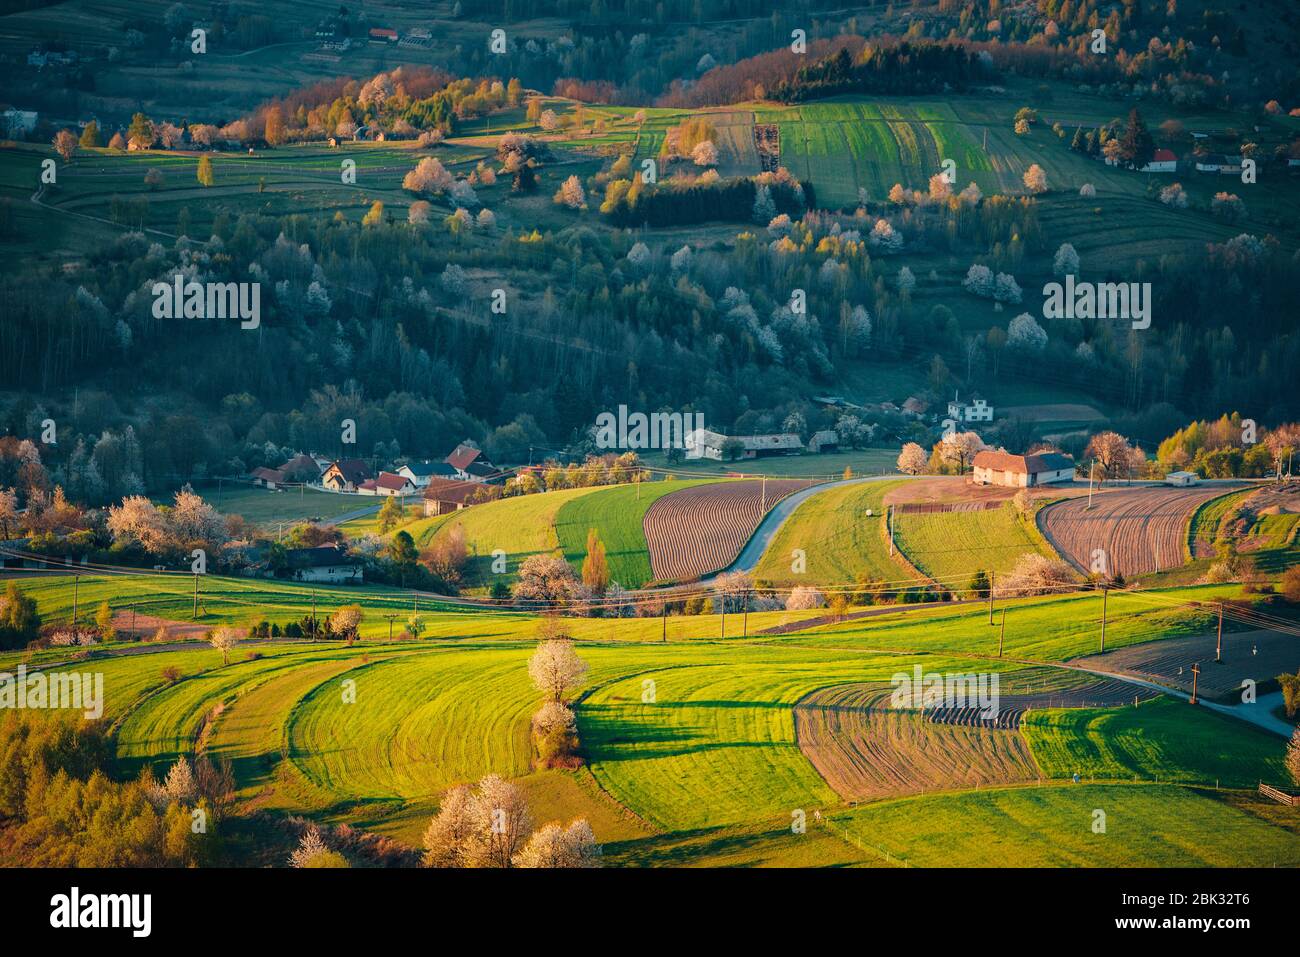 Luce del mattino nel paesaggio primaverile. Bei campi agricoli rurali verdi, piccole case, alberi in fiore, luce calda alba. Slovacchia, Europa Foto Stock